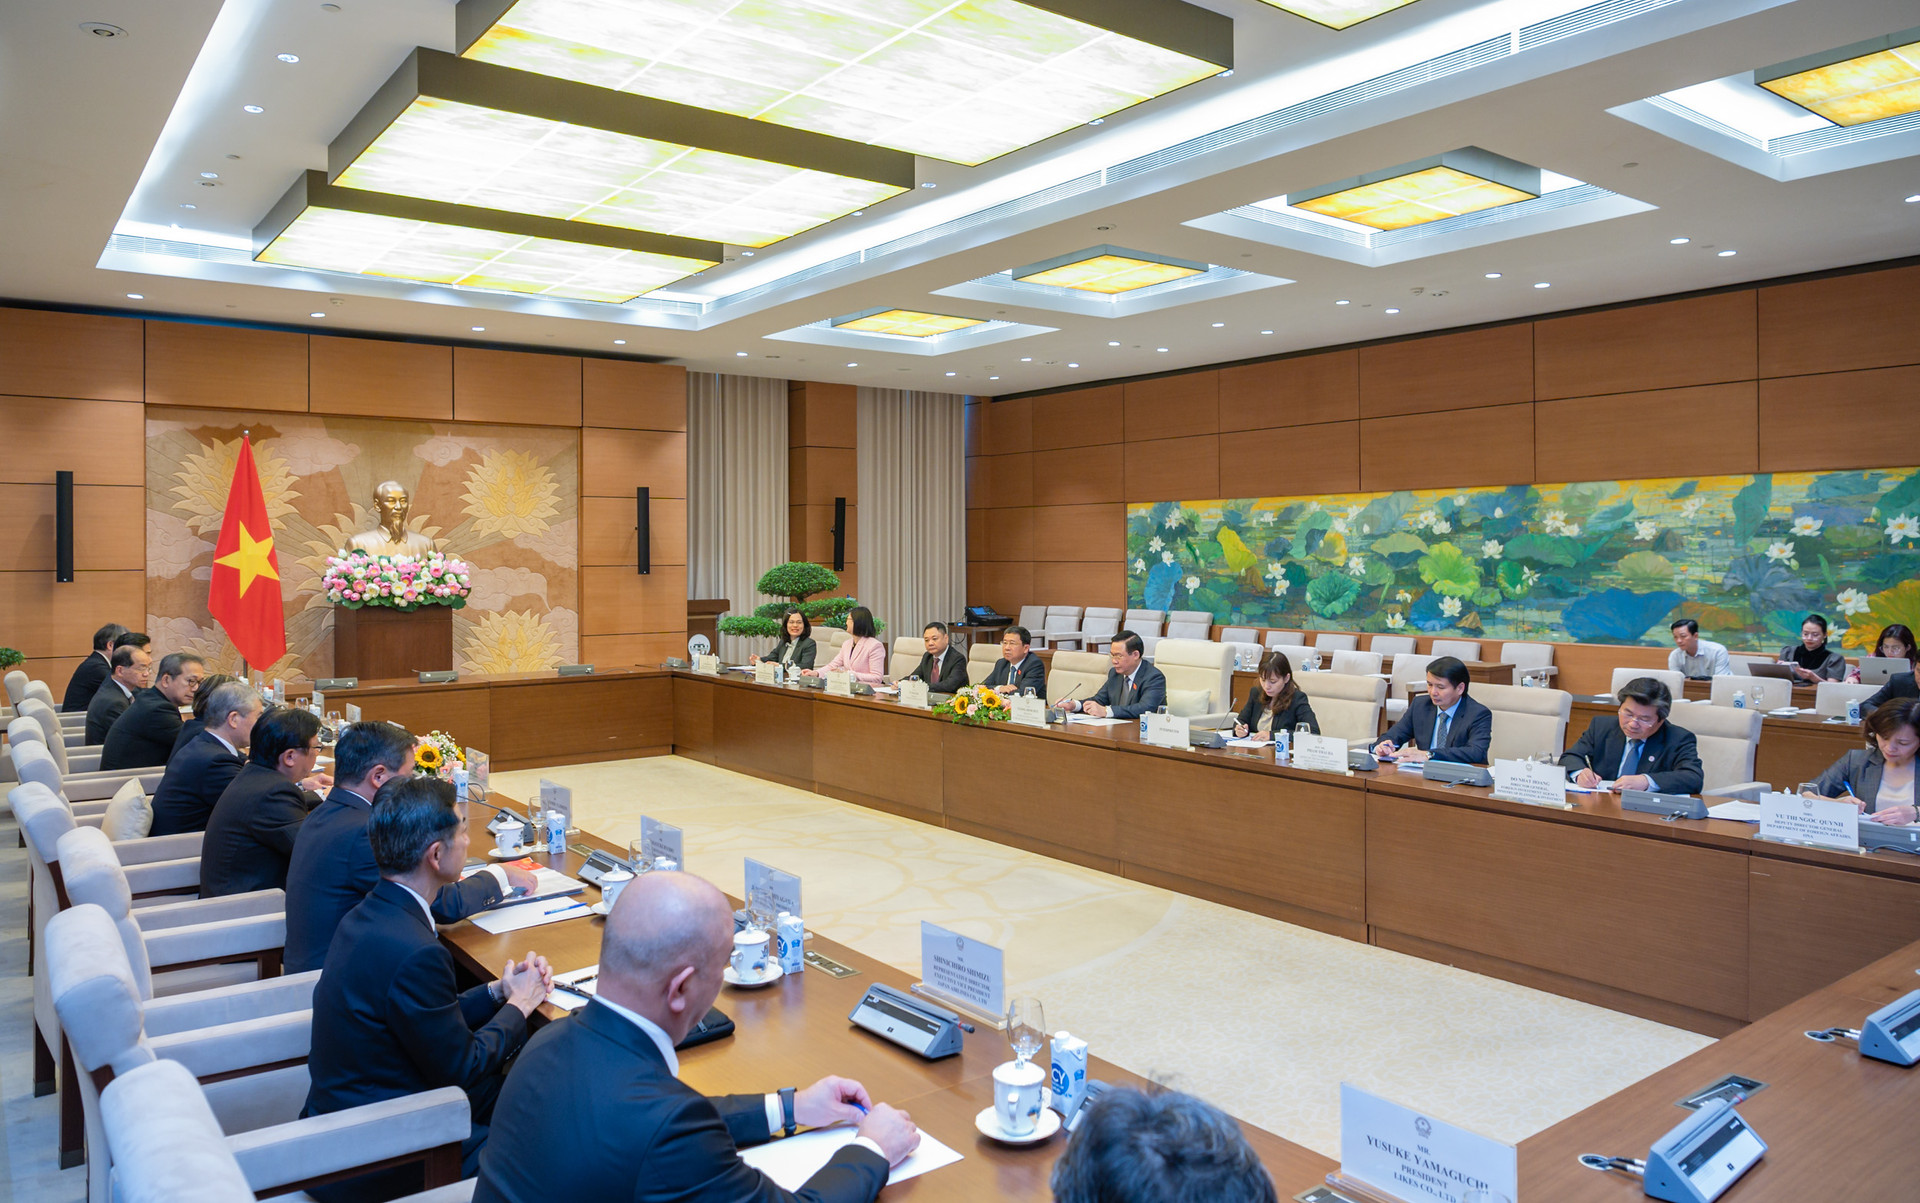 Chủ tịch Quốc hội: Gắn kết chặt chẽ hai nền kinh tế Việt Nam và Nhật Bản trên 4 nhóm lĩnh vực